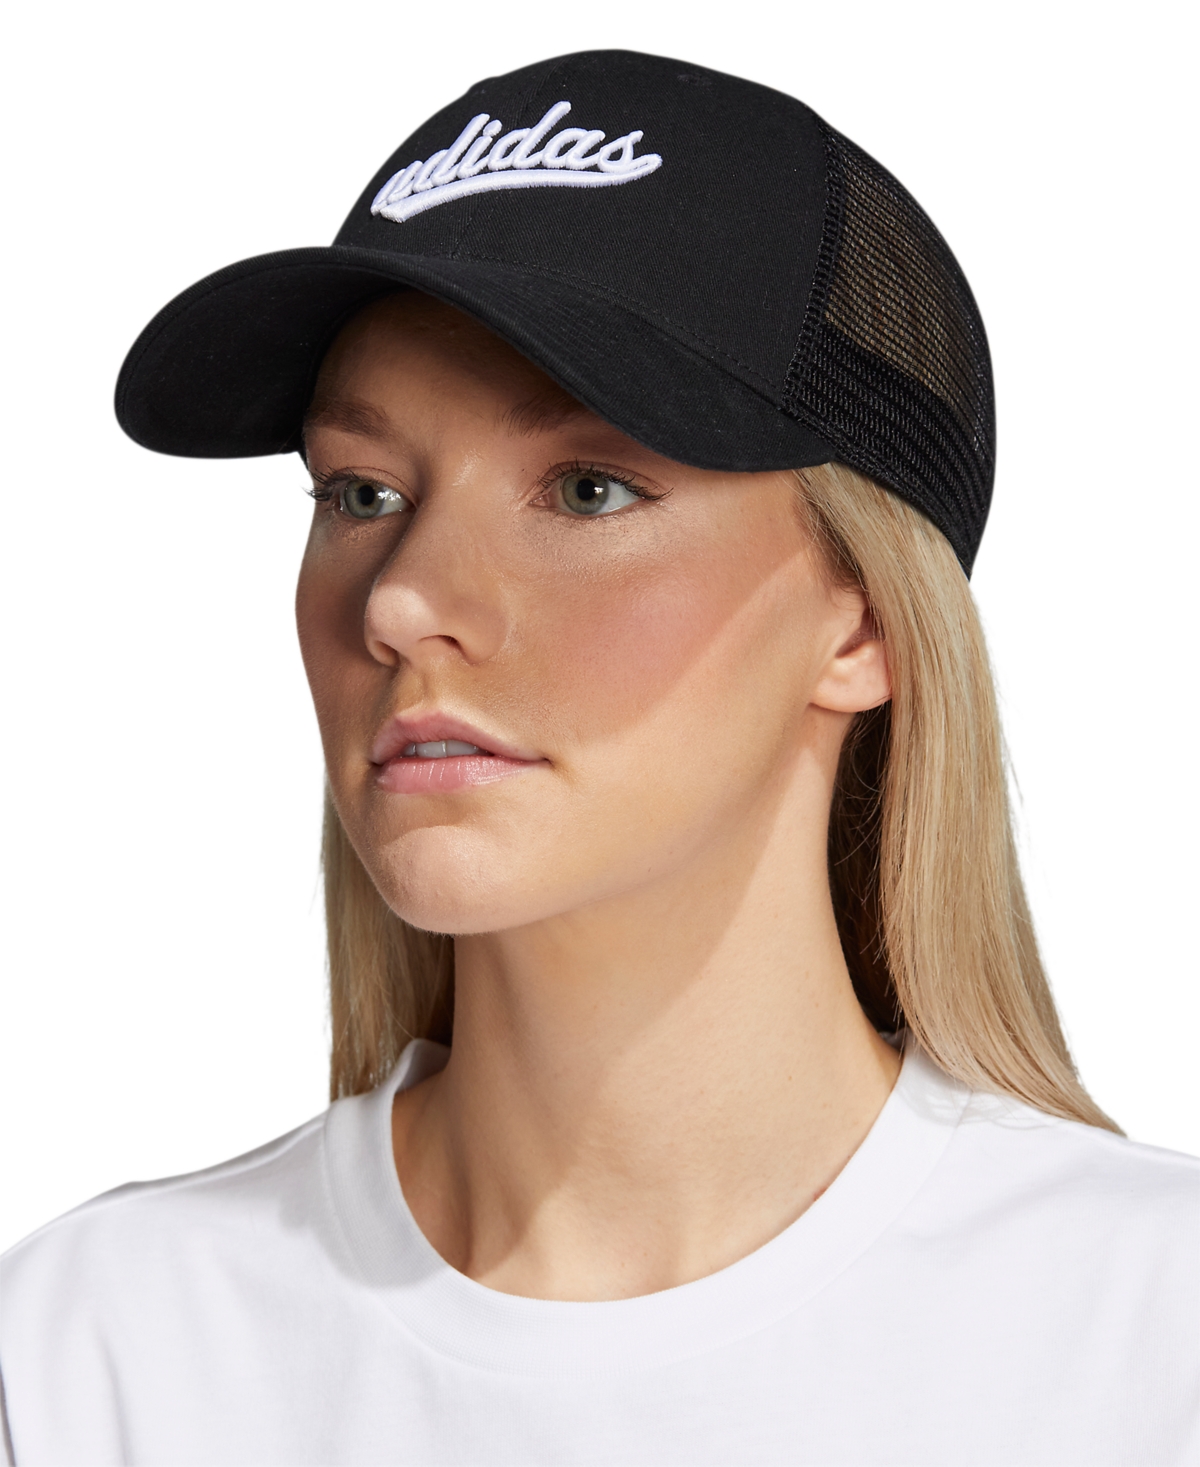 Adidas Originals Women's Embroidered Logo Mesh Trucker Hat In Black,white